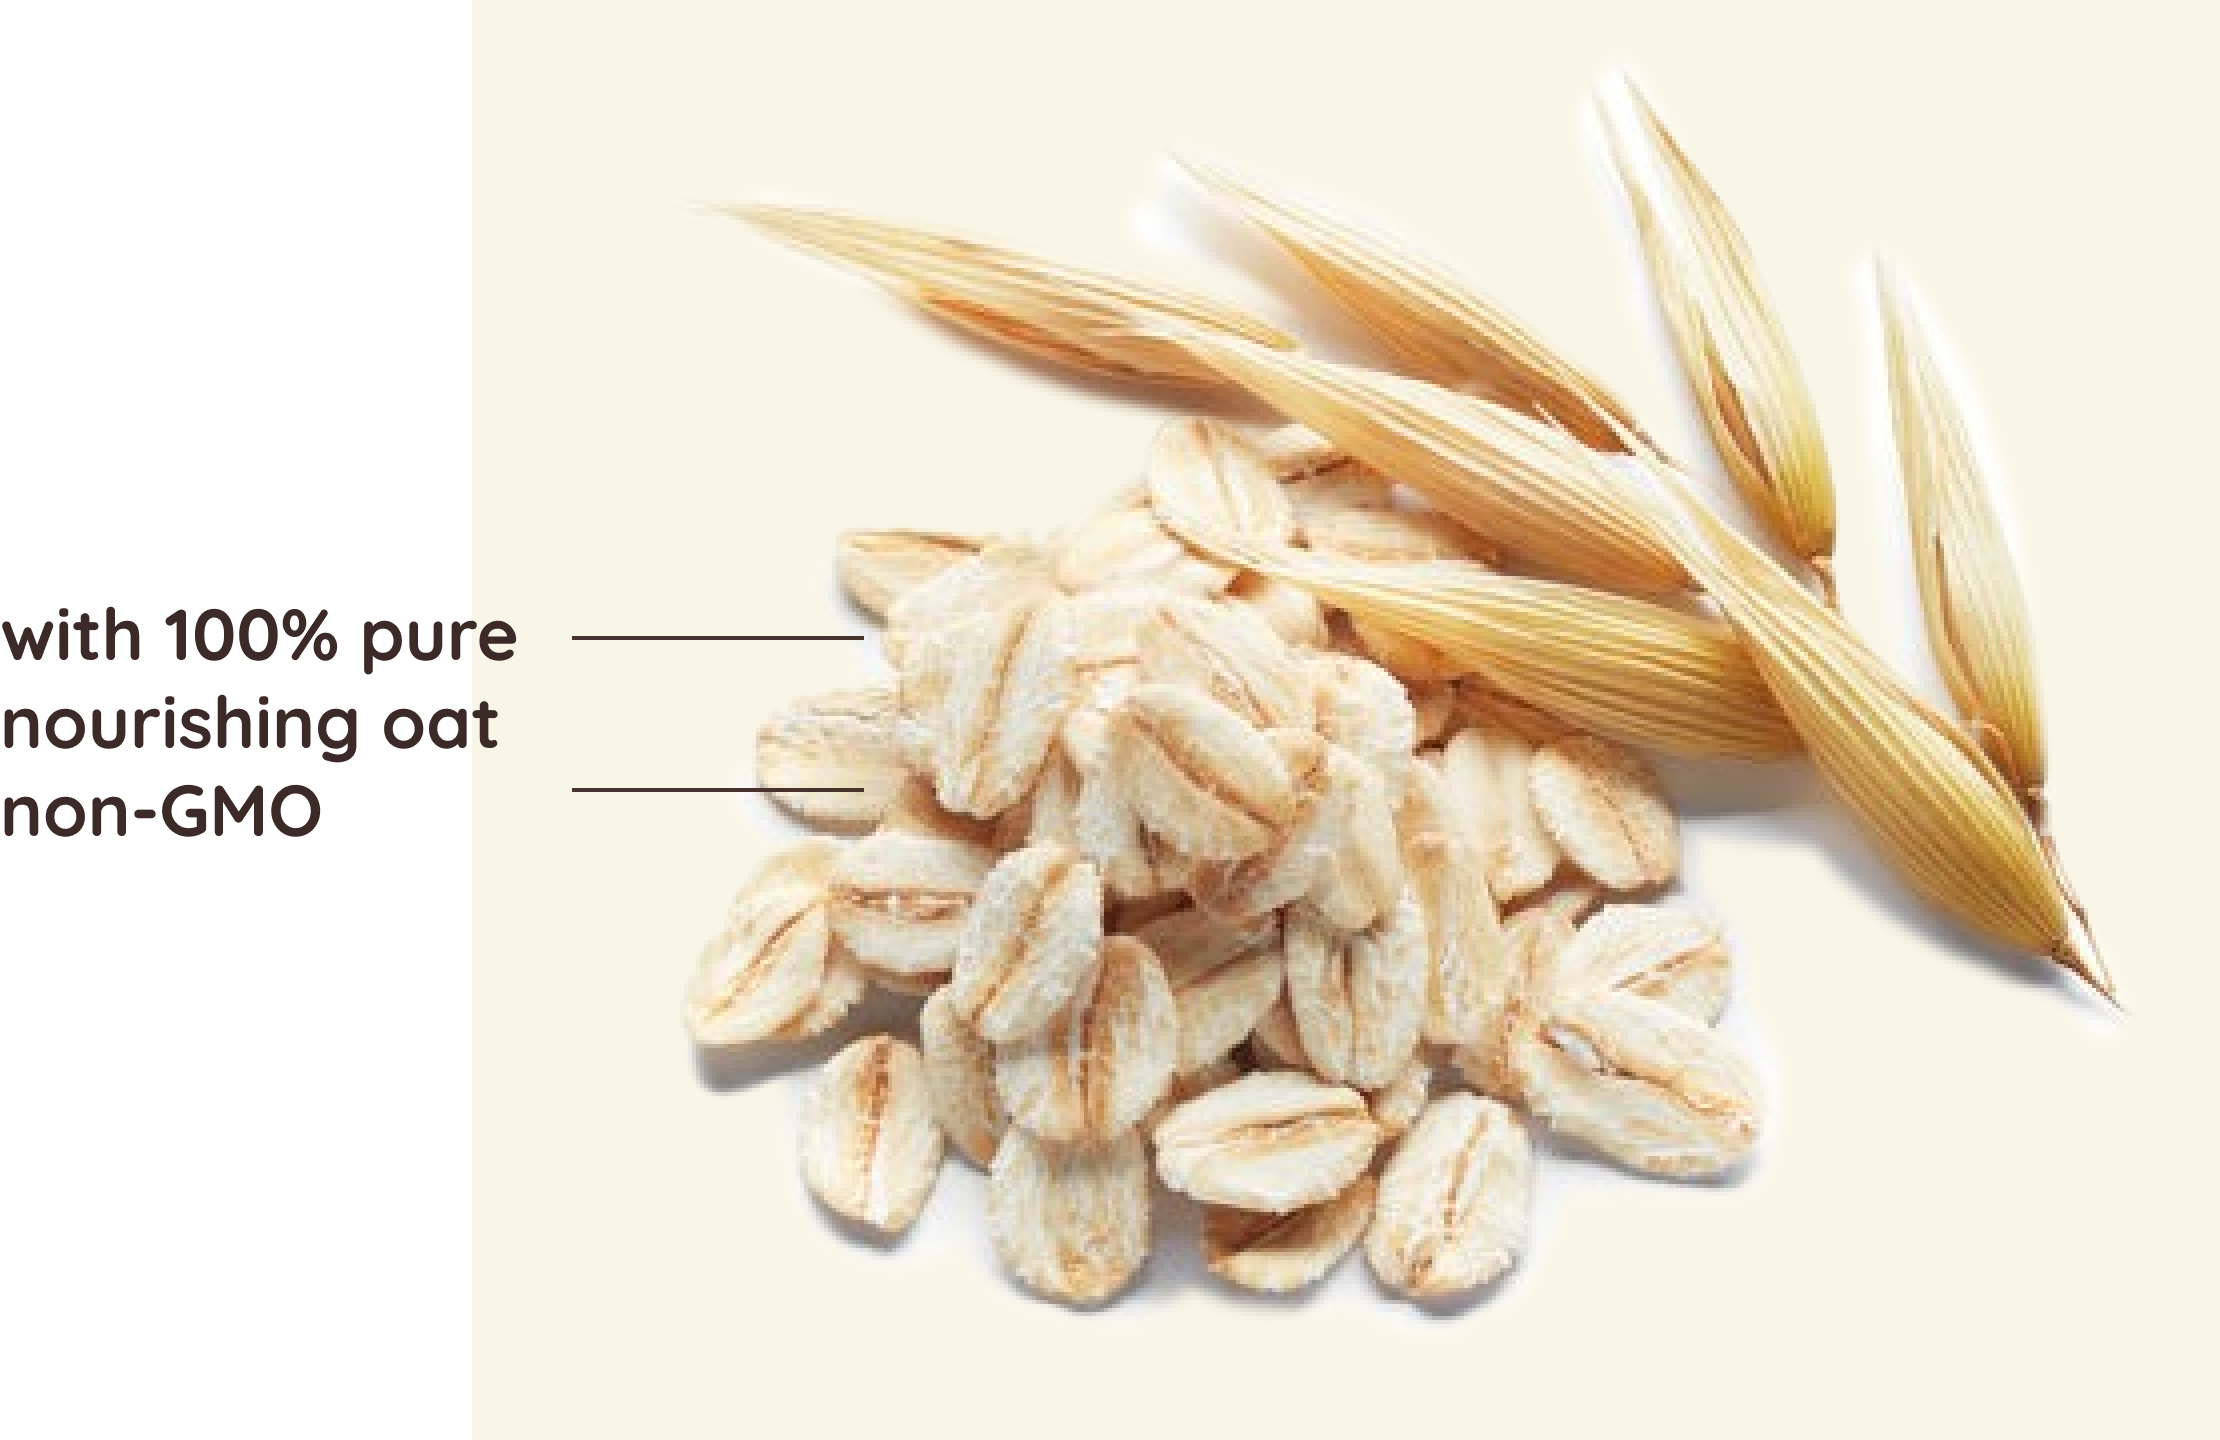 with 100% pure nourishing oat (non-GMO)